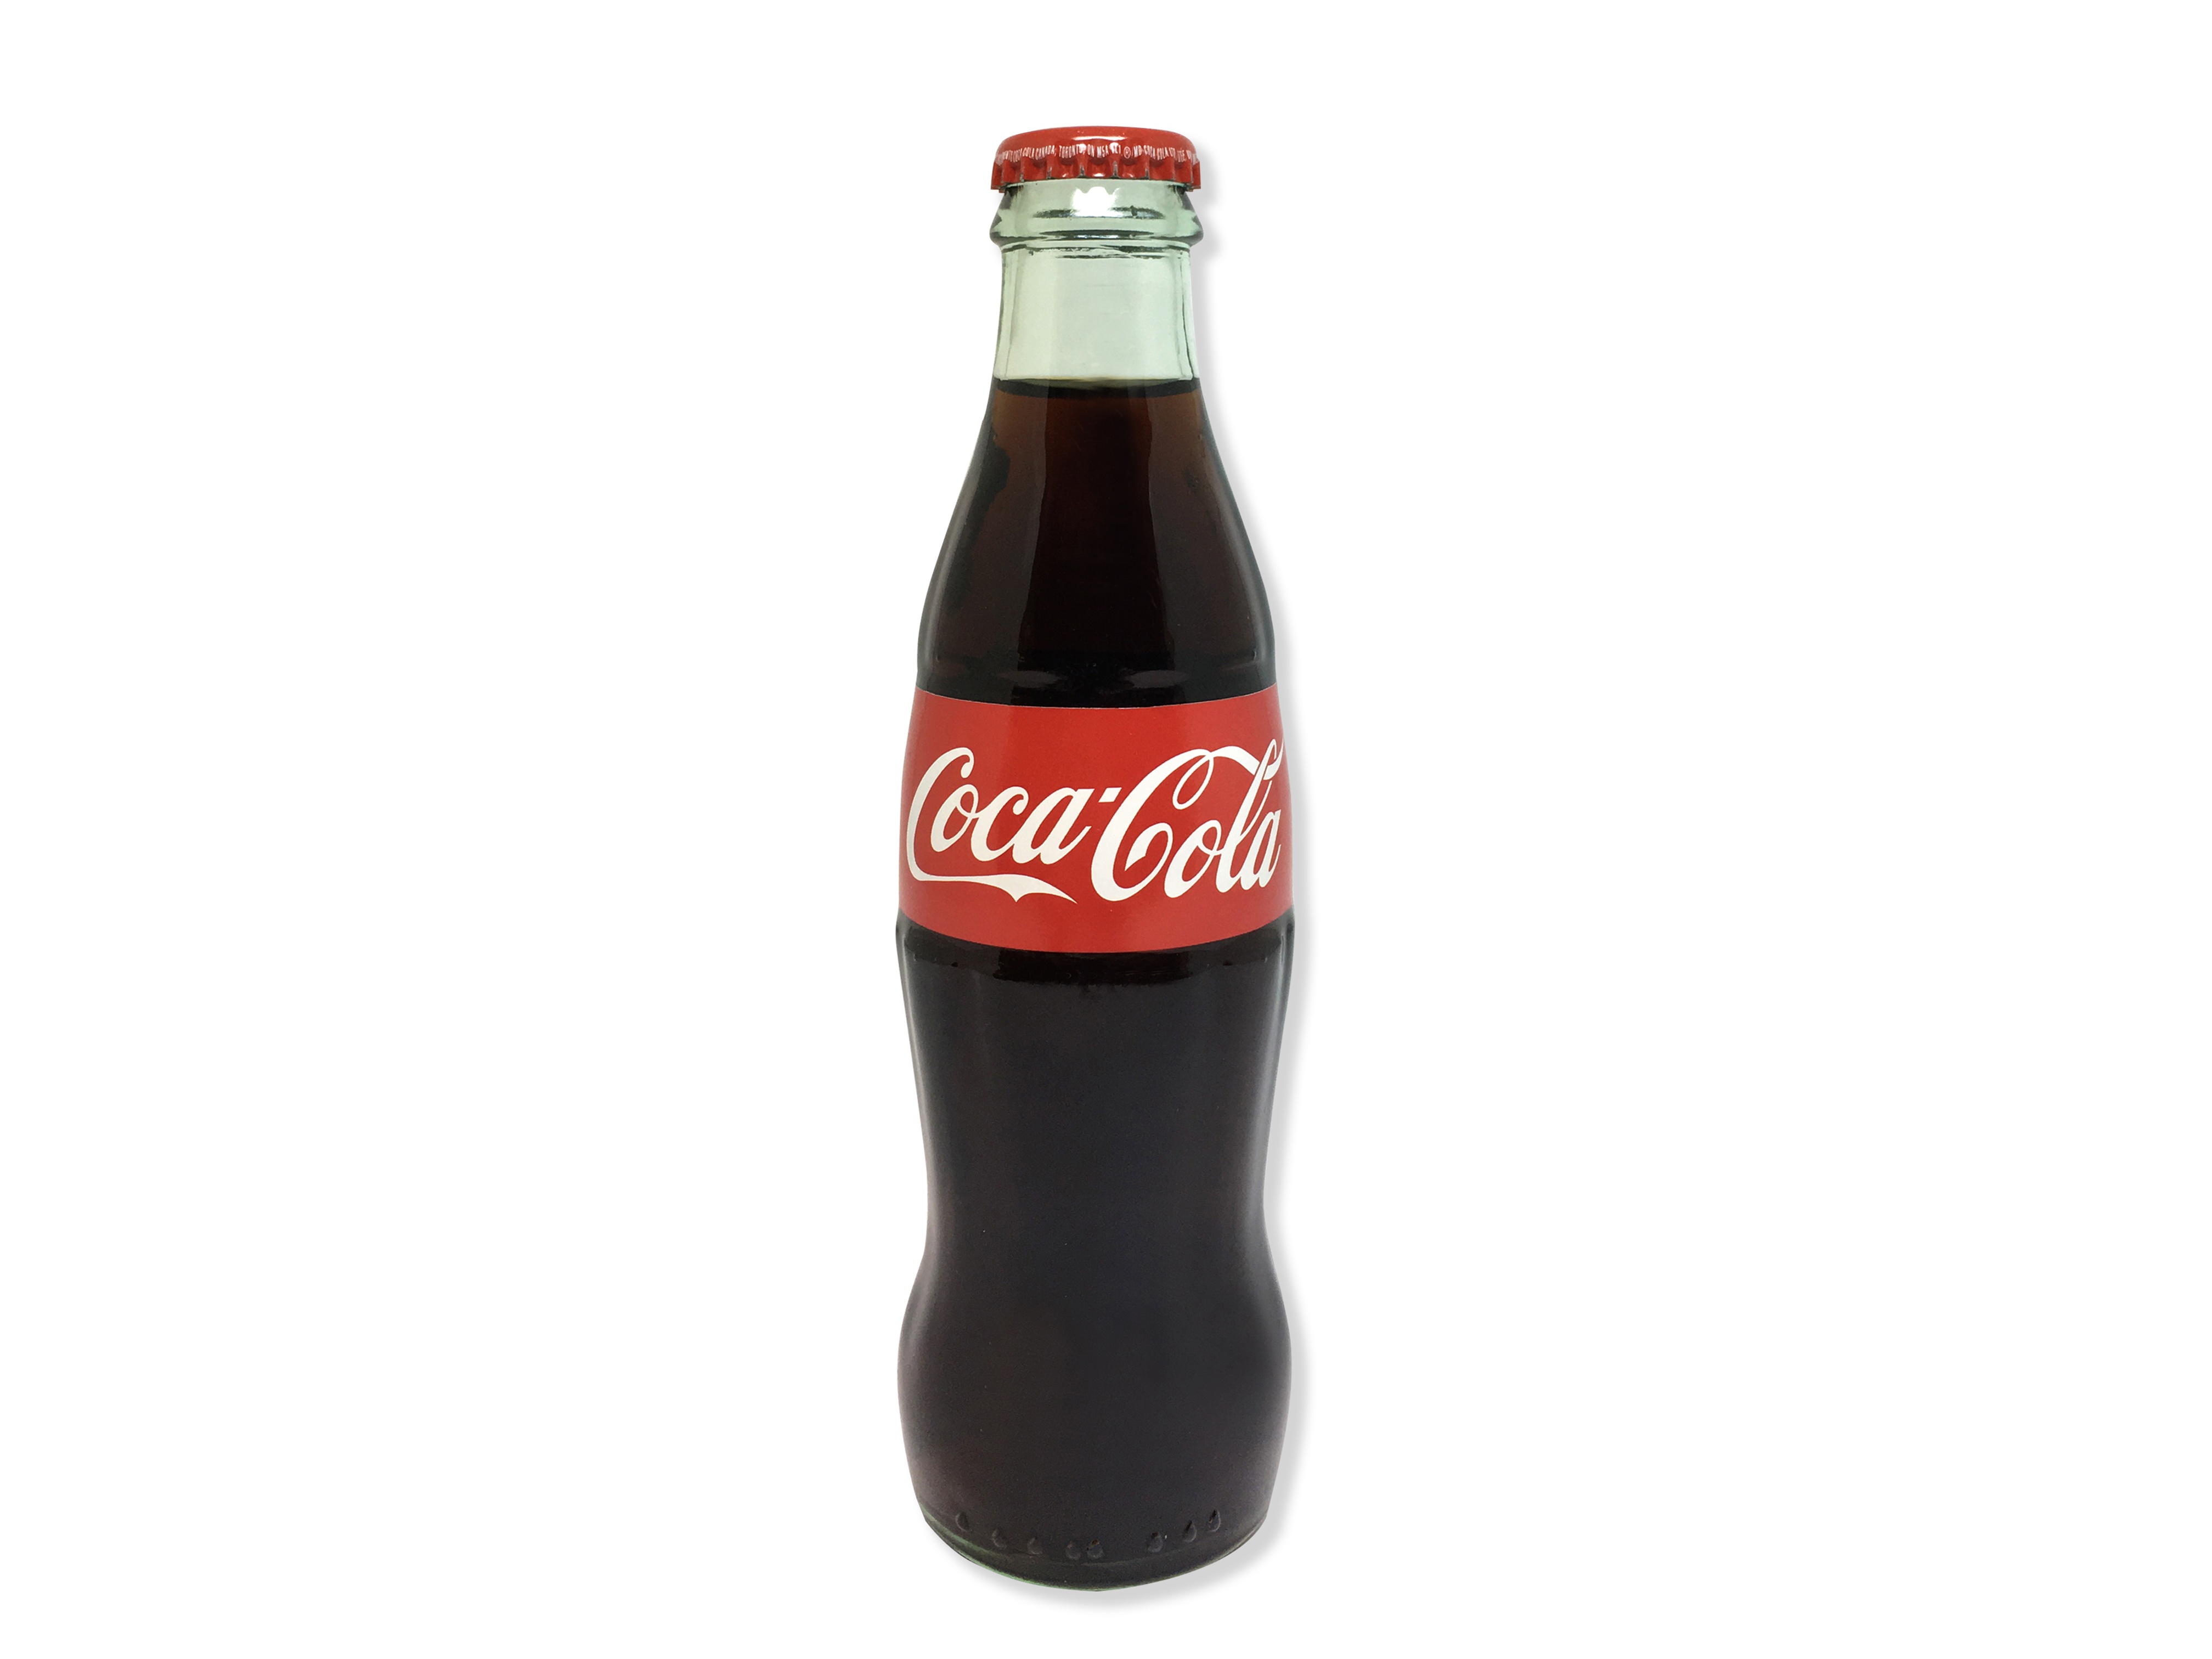 https://0901.nccdn.net/4_2/000/000/008/486/coca-cola-bottle2017-4032x3024.jpg